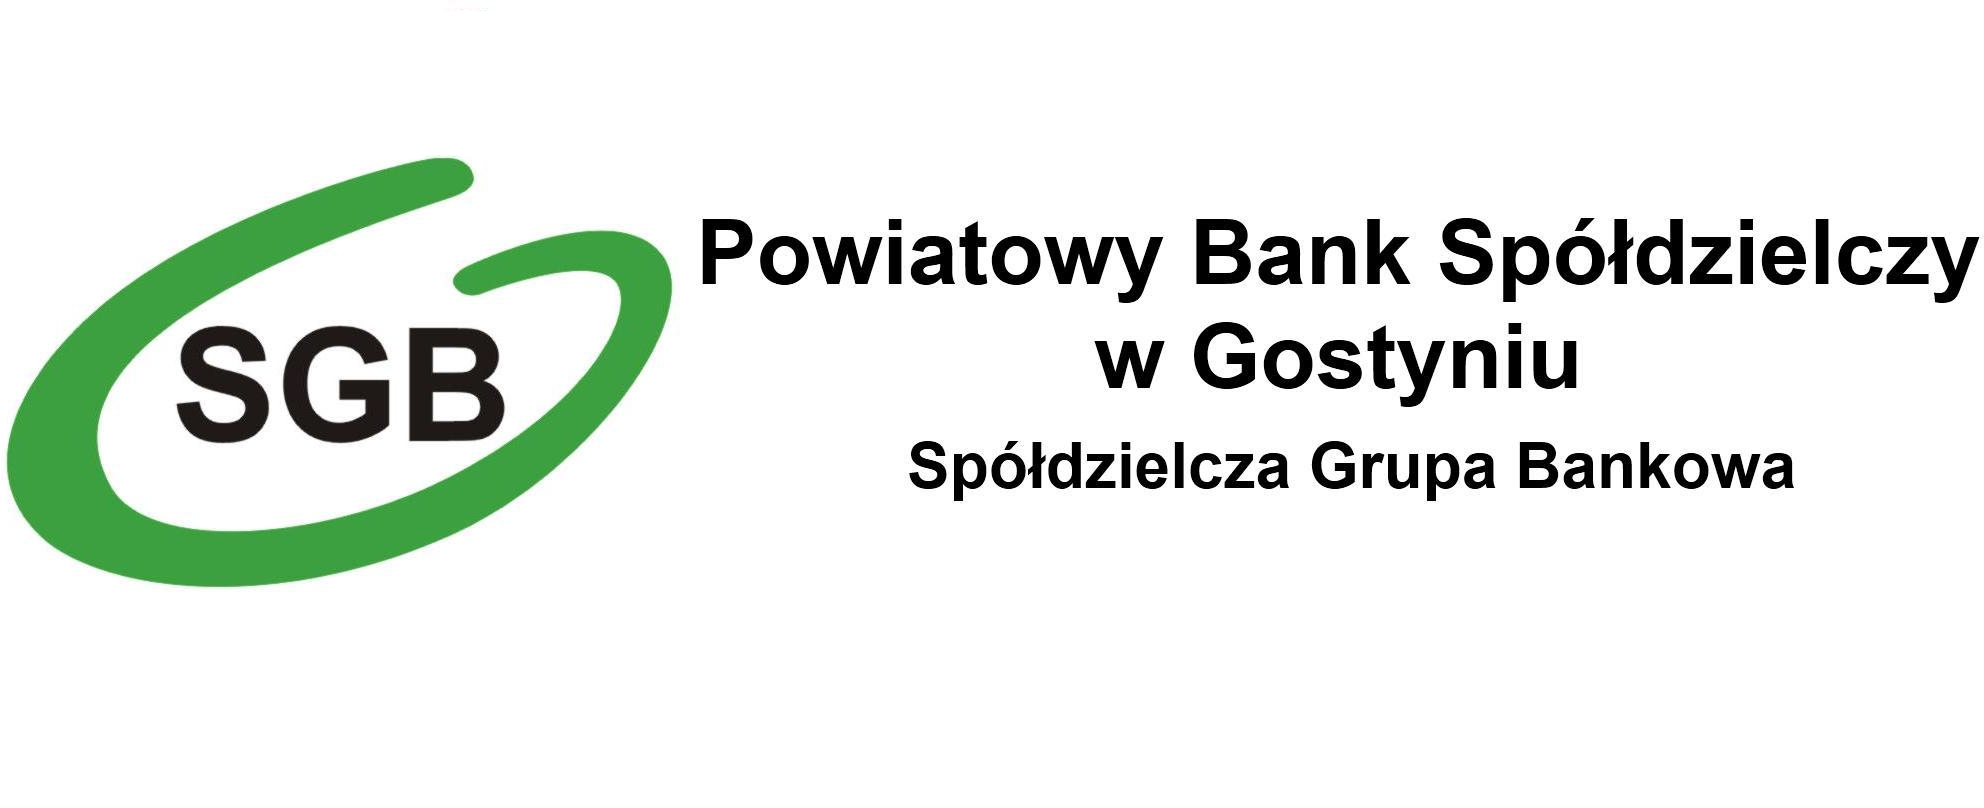 Autoryzuj zlecenia MOBILNIE z aplikacją MobileNet! - Powiatowy Bank Spółdzielczy w Gostyniu